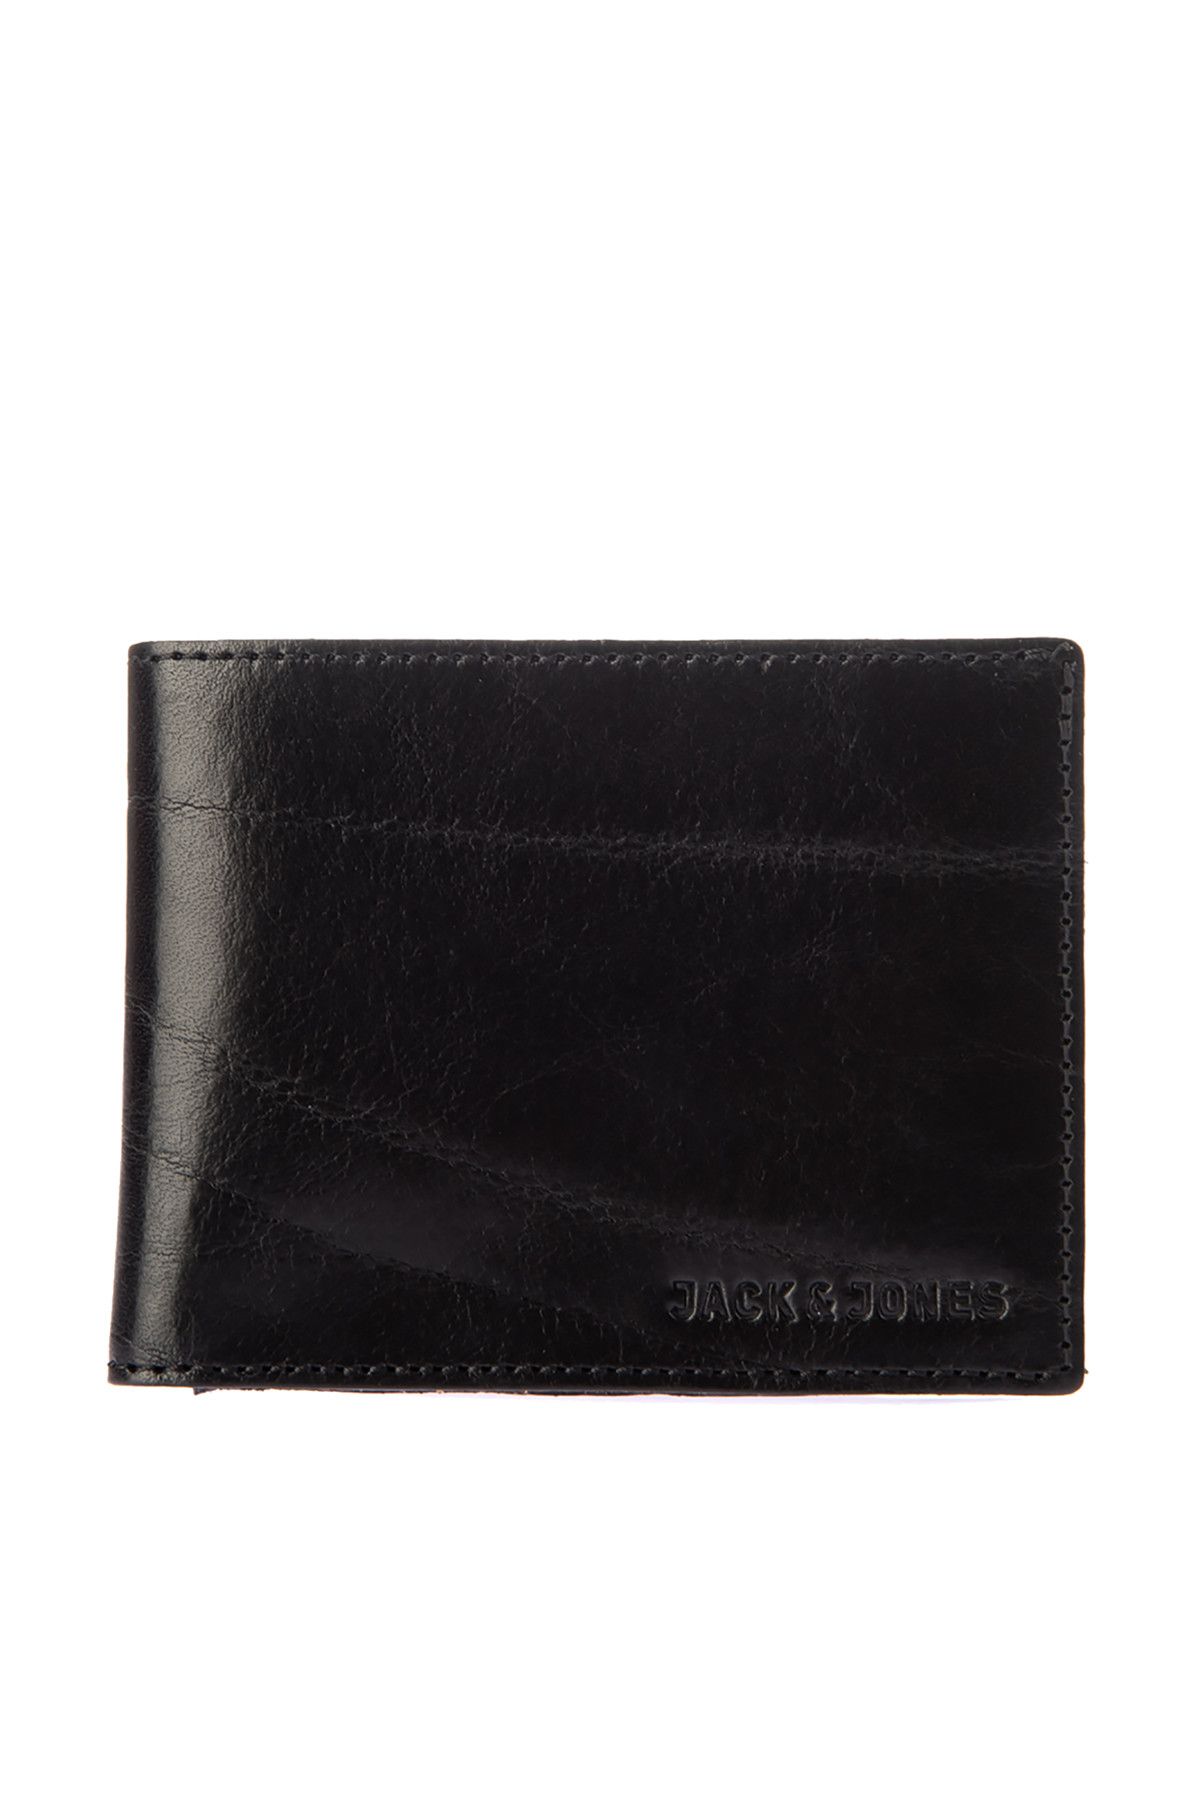 Jack & Jones Cüzdan - Leather Denim Wallet 12111377